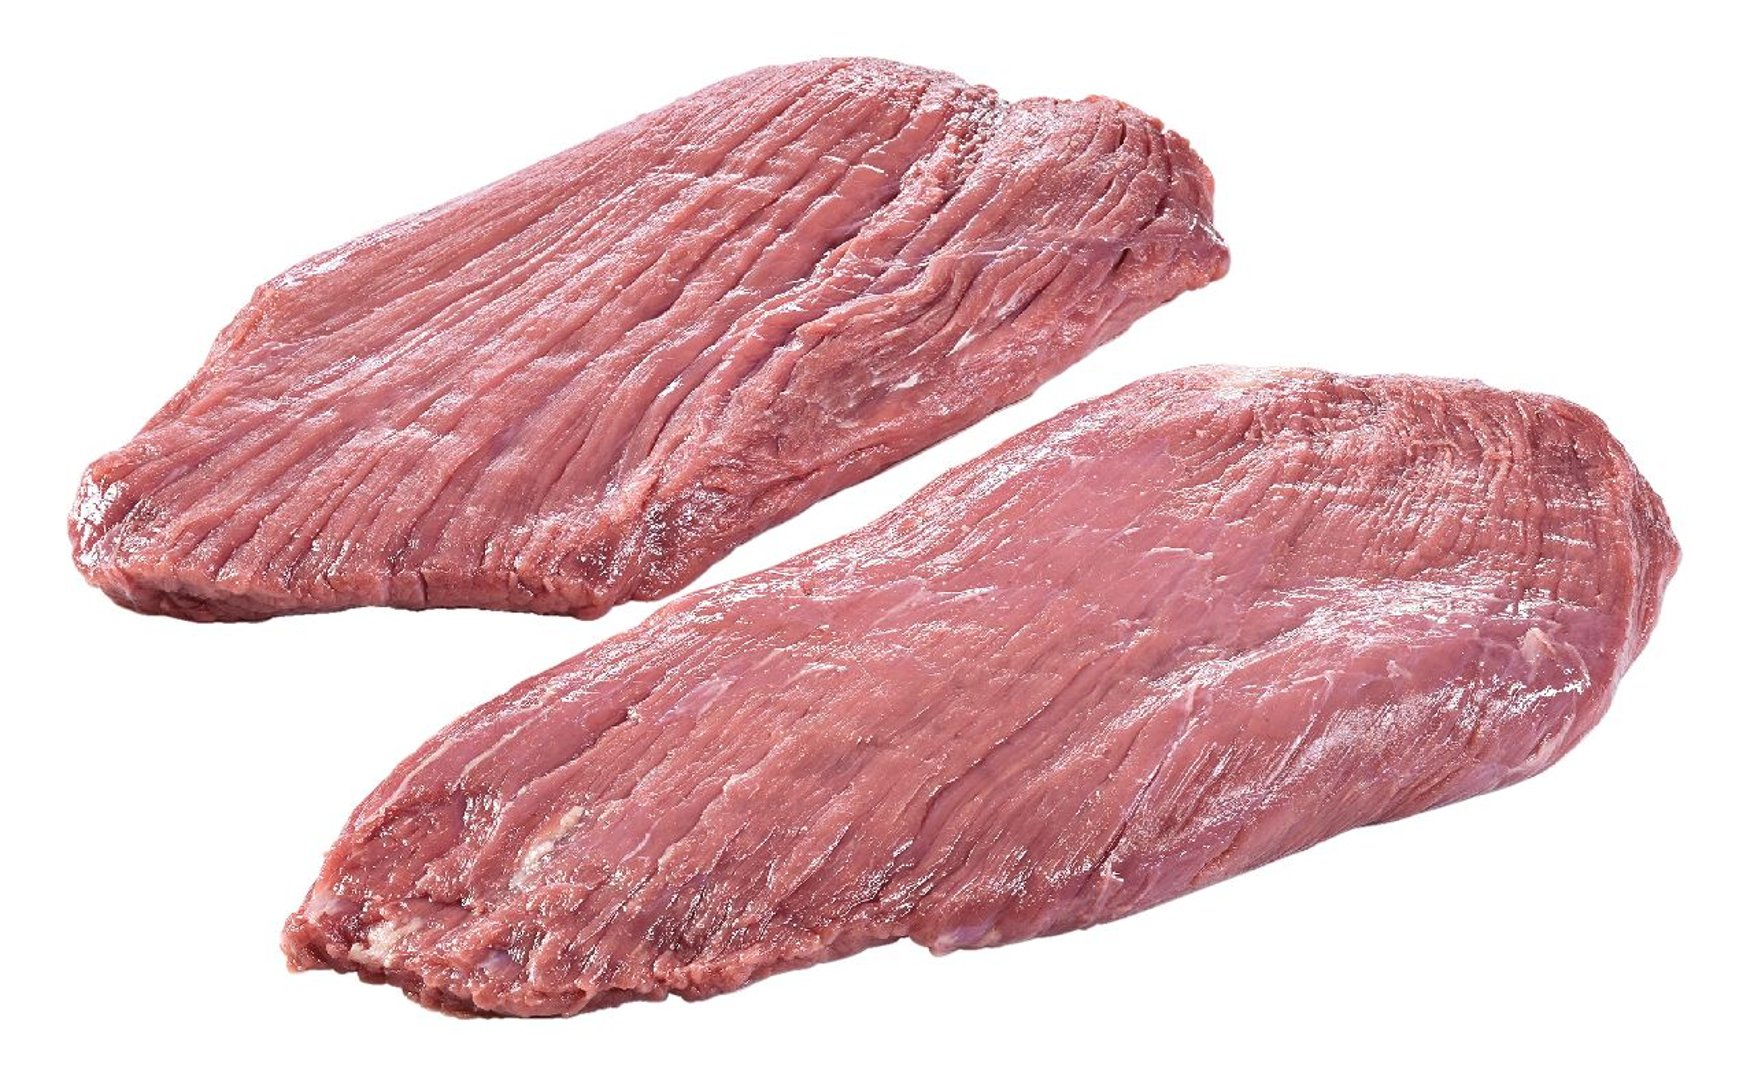 True Wilderness - Dry Aged Rinder Flank Steak - ca. 1,5 kg